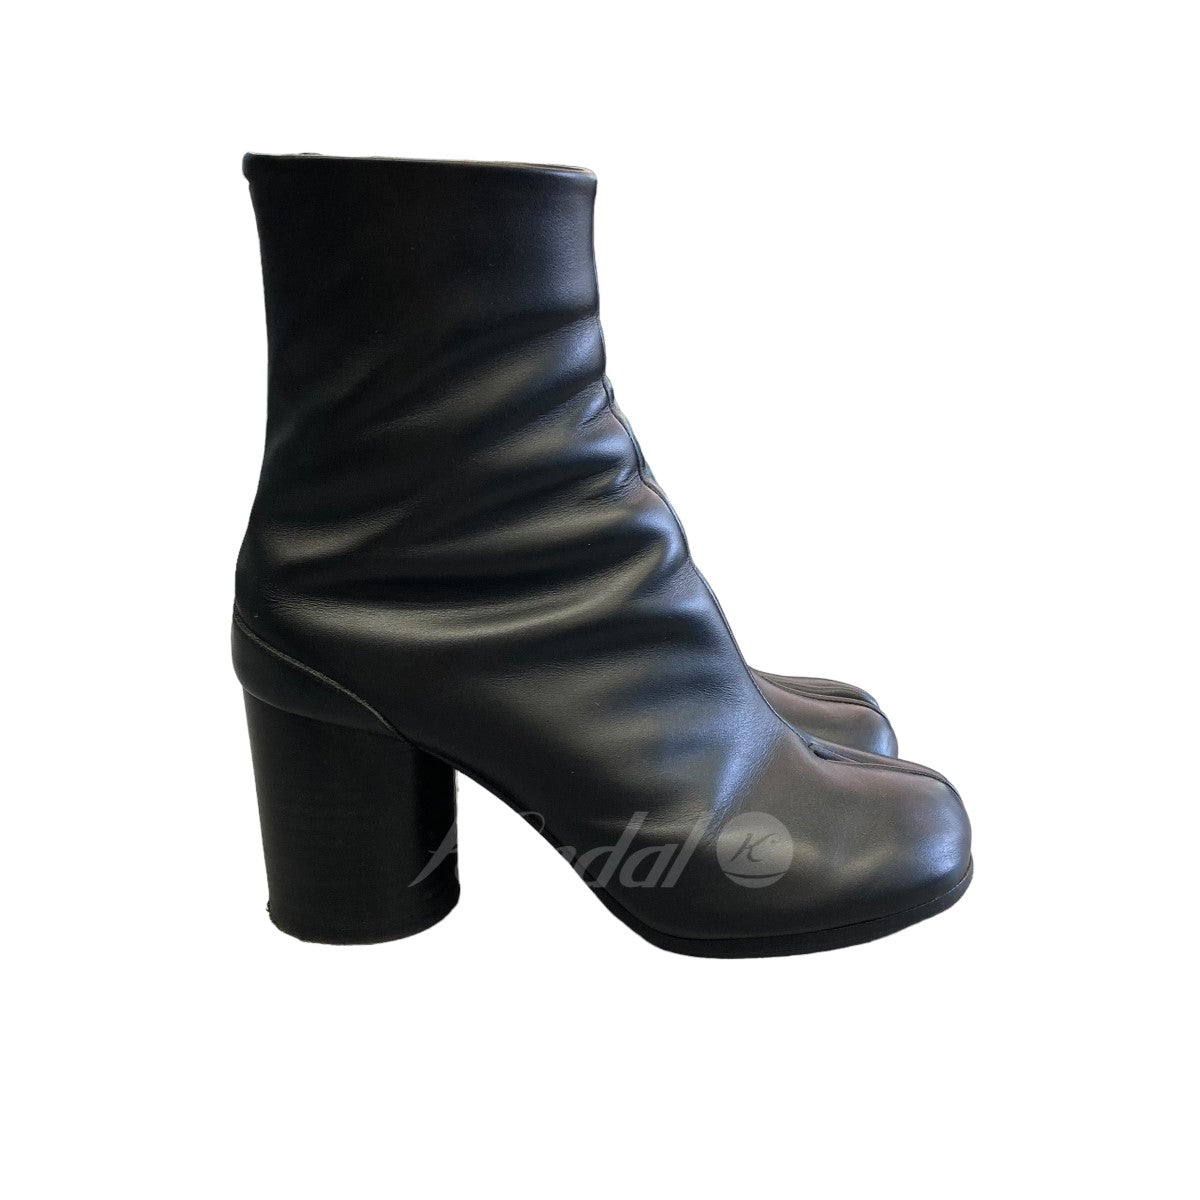 Maison Margiela(メゾン マルジェラ) 足袋ブーツ ブラック サイズ 12 